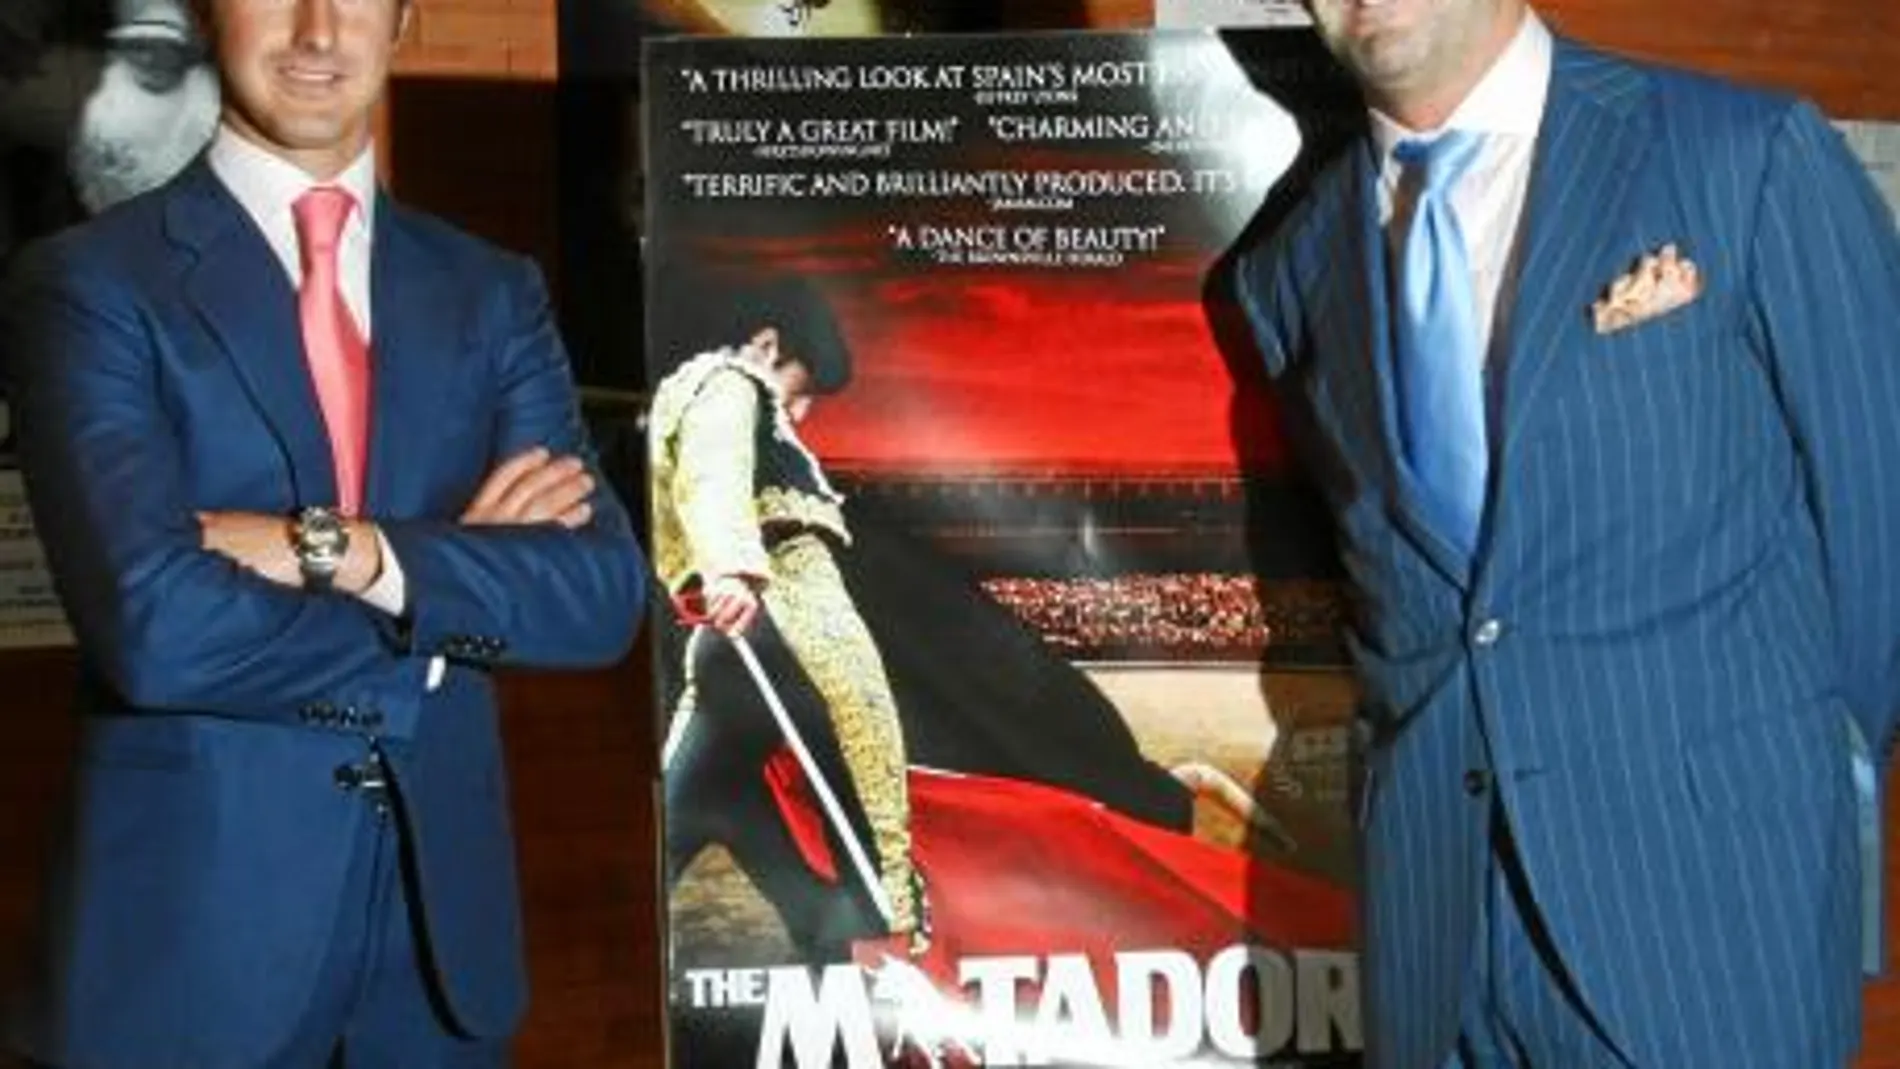 El diestro granadino posa junto al director Stephen Higgins delante del cartel de la película